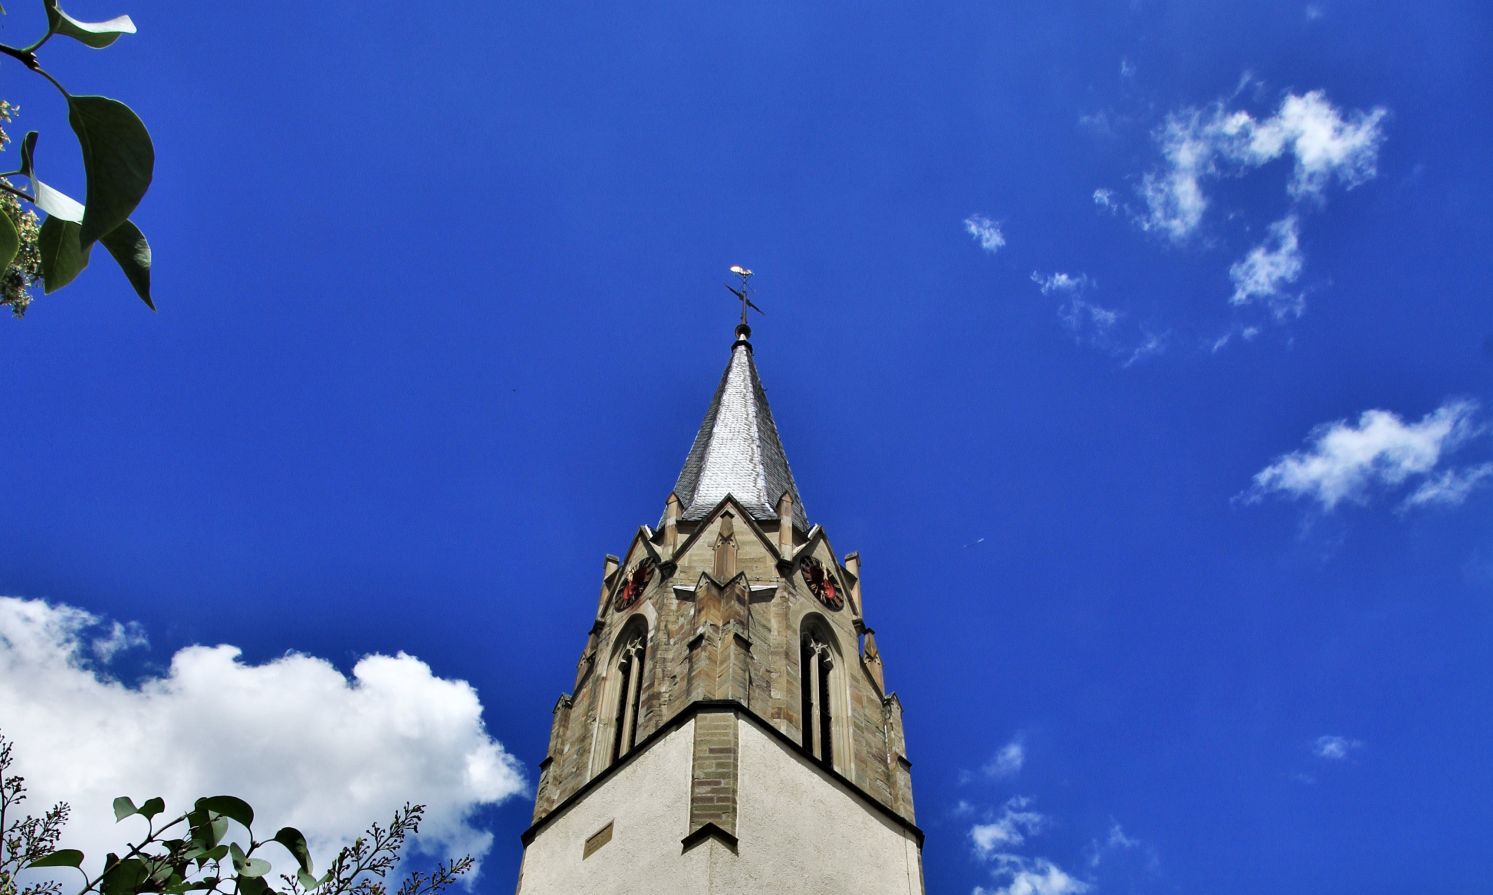 Zu sehen ist der Kirchturm der Evangelischen Johanneskirche Richtung Himmel